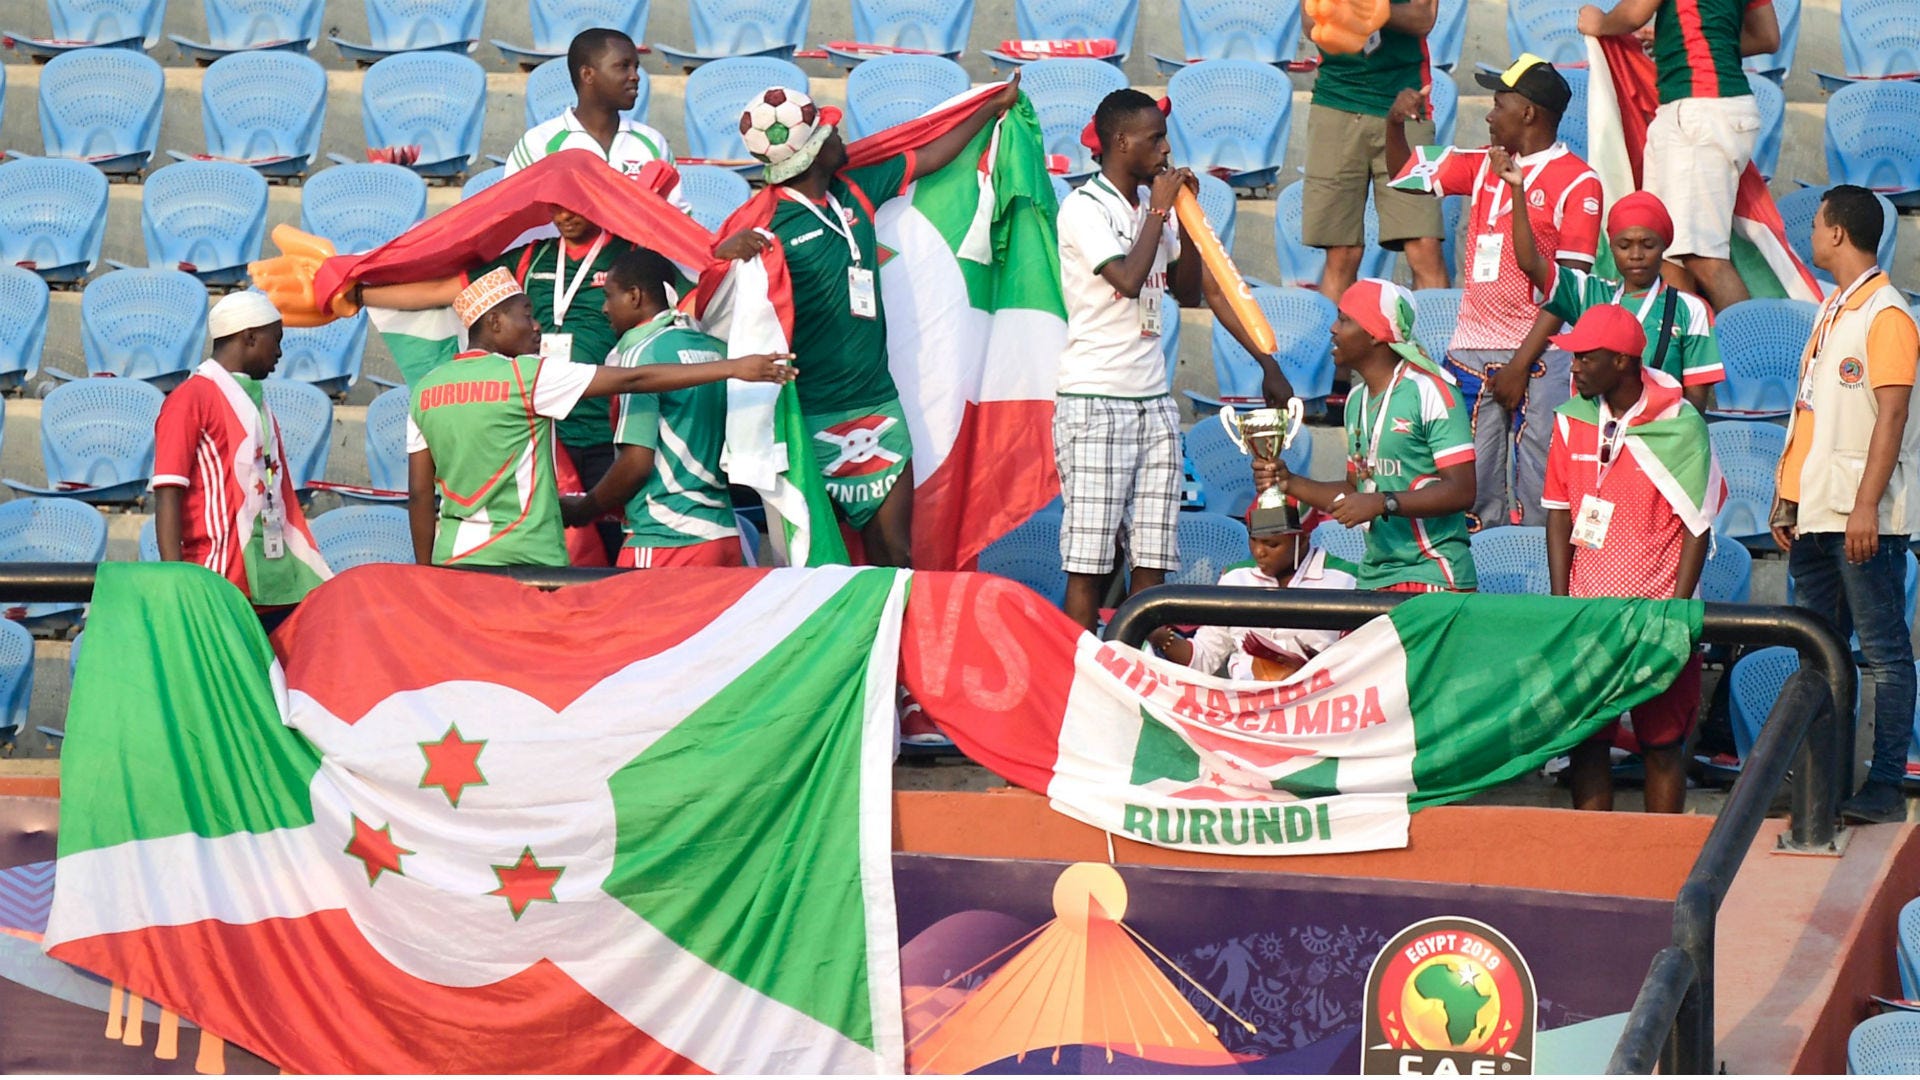 Burundi fans